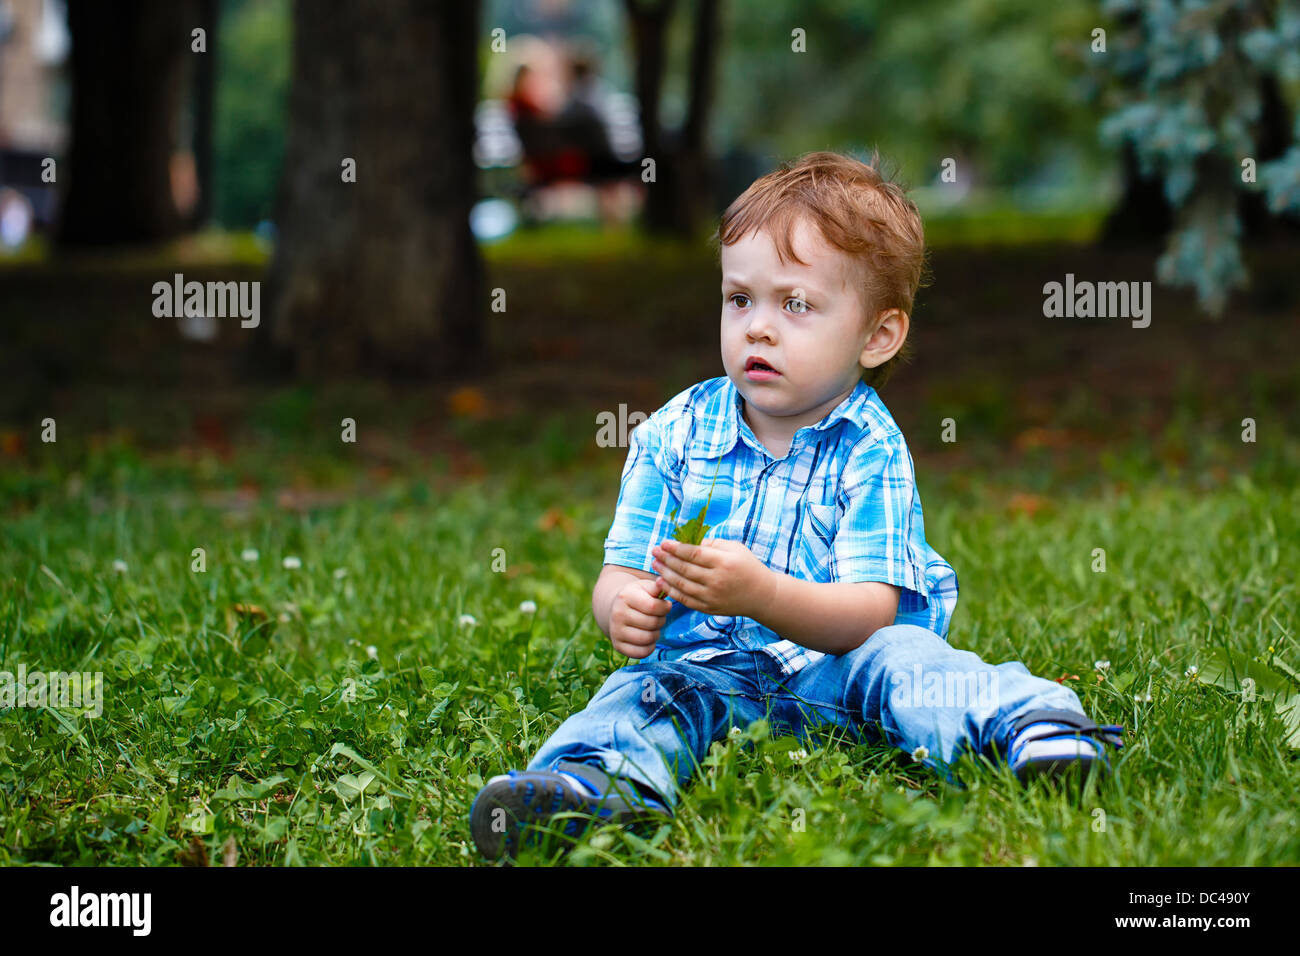 Little Boy in jeans e un plaid shirt seduto sull'erba nel parco Foto Stock